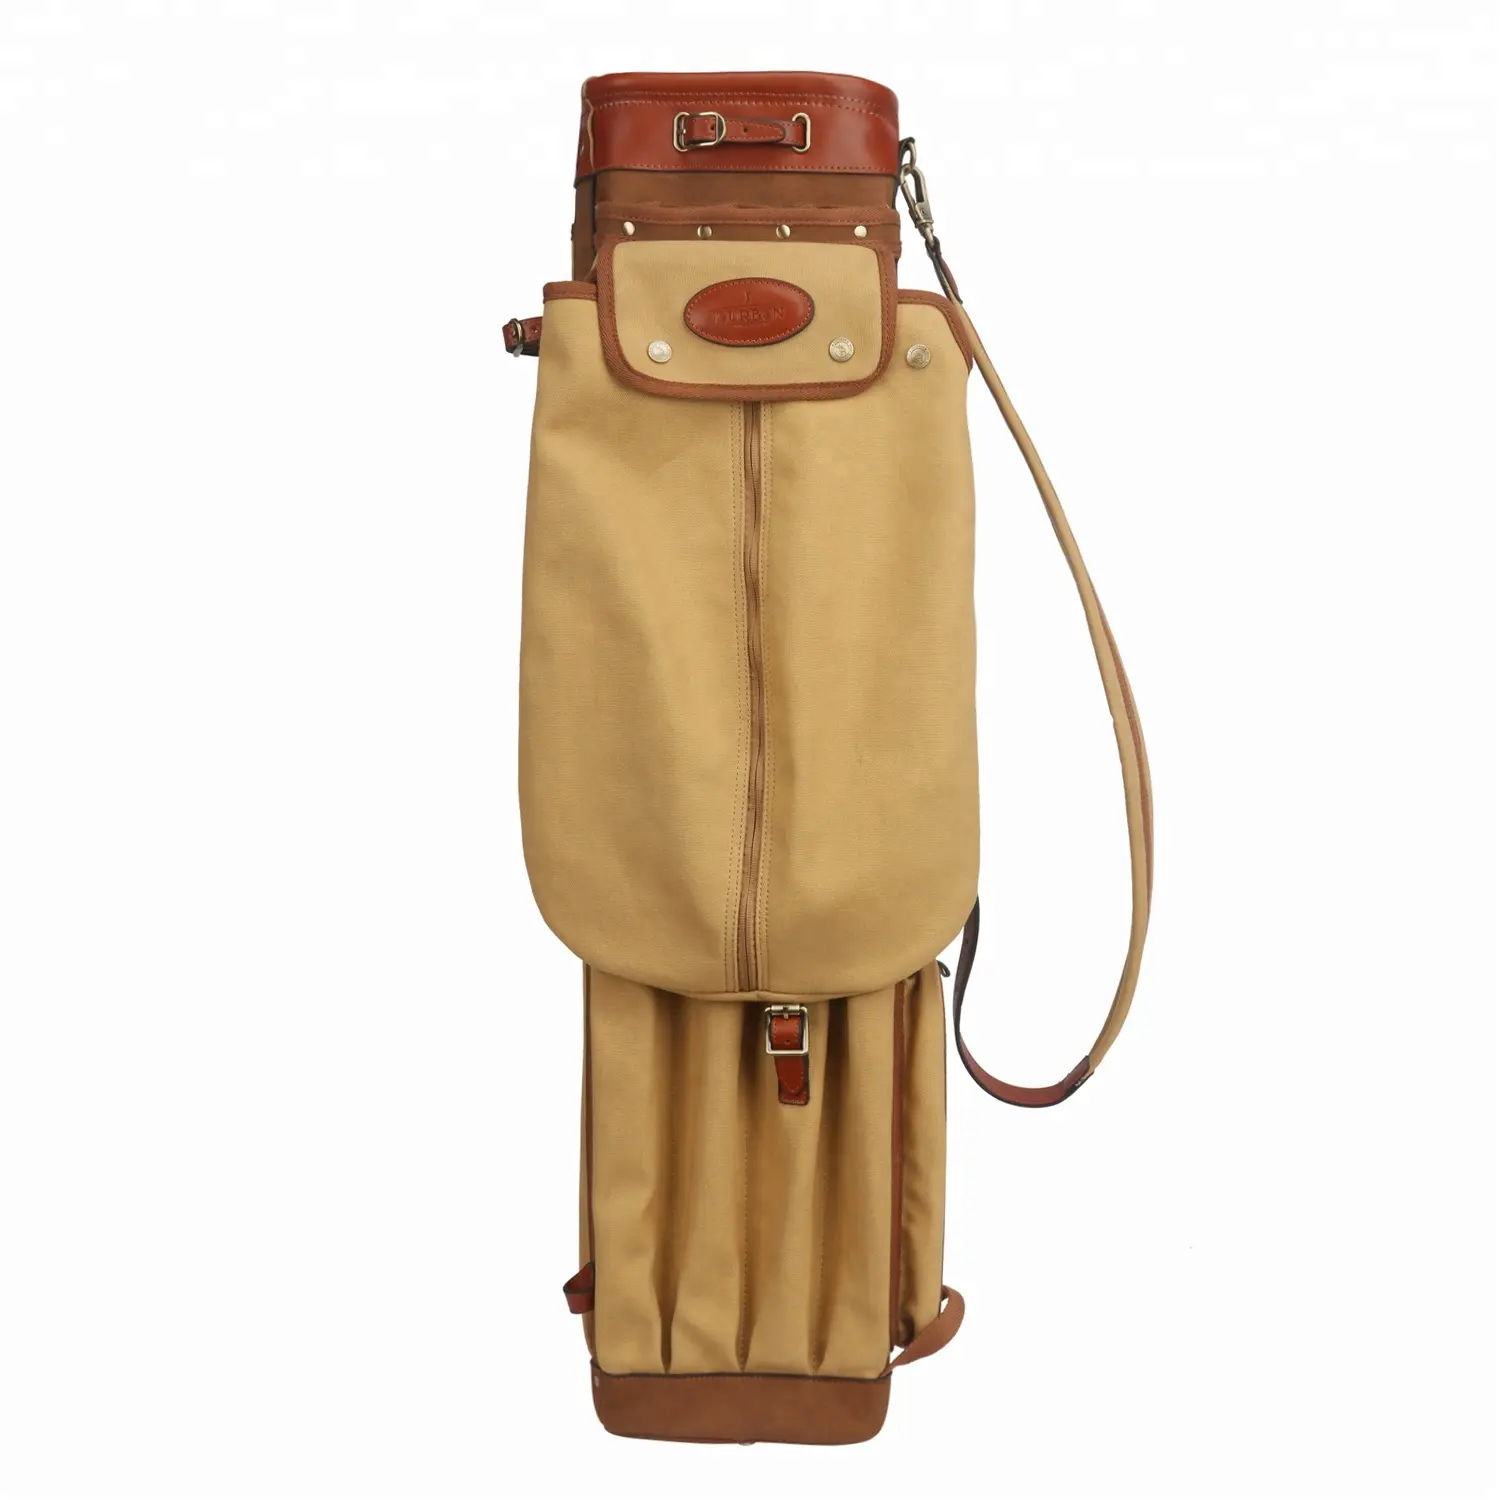 उच्च गुणवत्ता वाले कस्टम विंटेज वॉटरप्रूफ गोल्फ बैग टूरबन कैनवास स्टाफ कैरी बैग असली लेदर से बना है